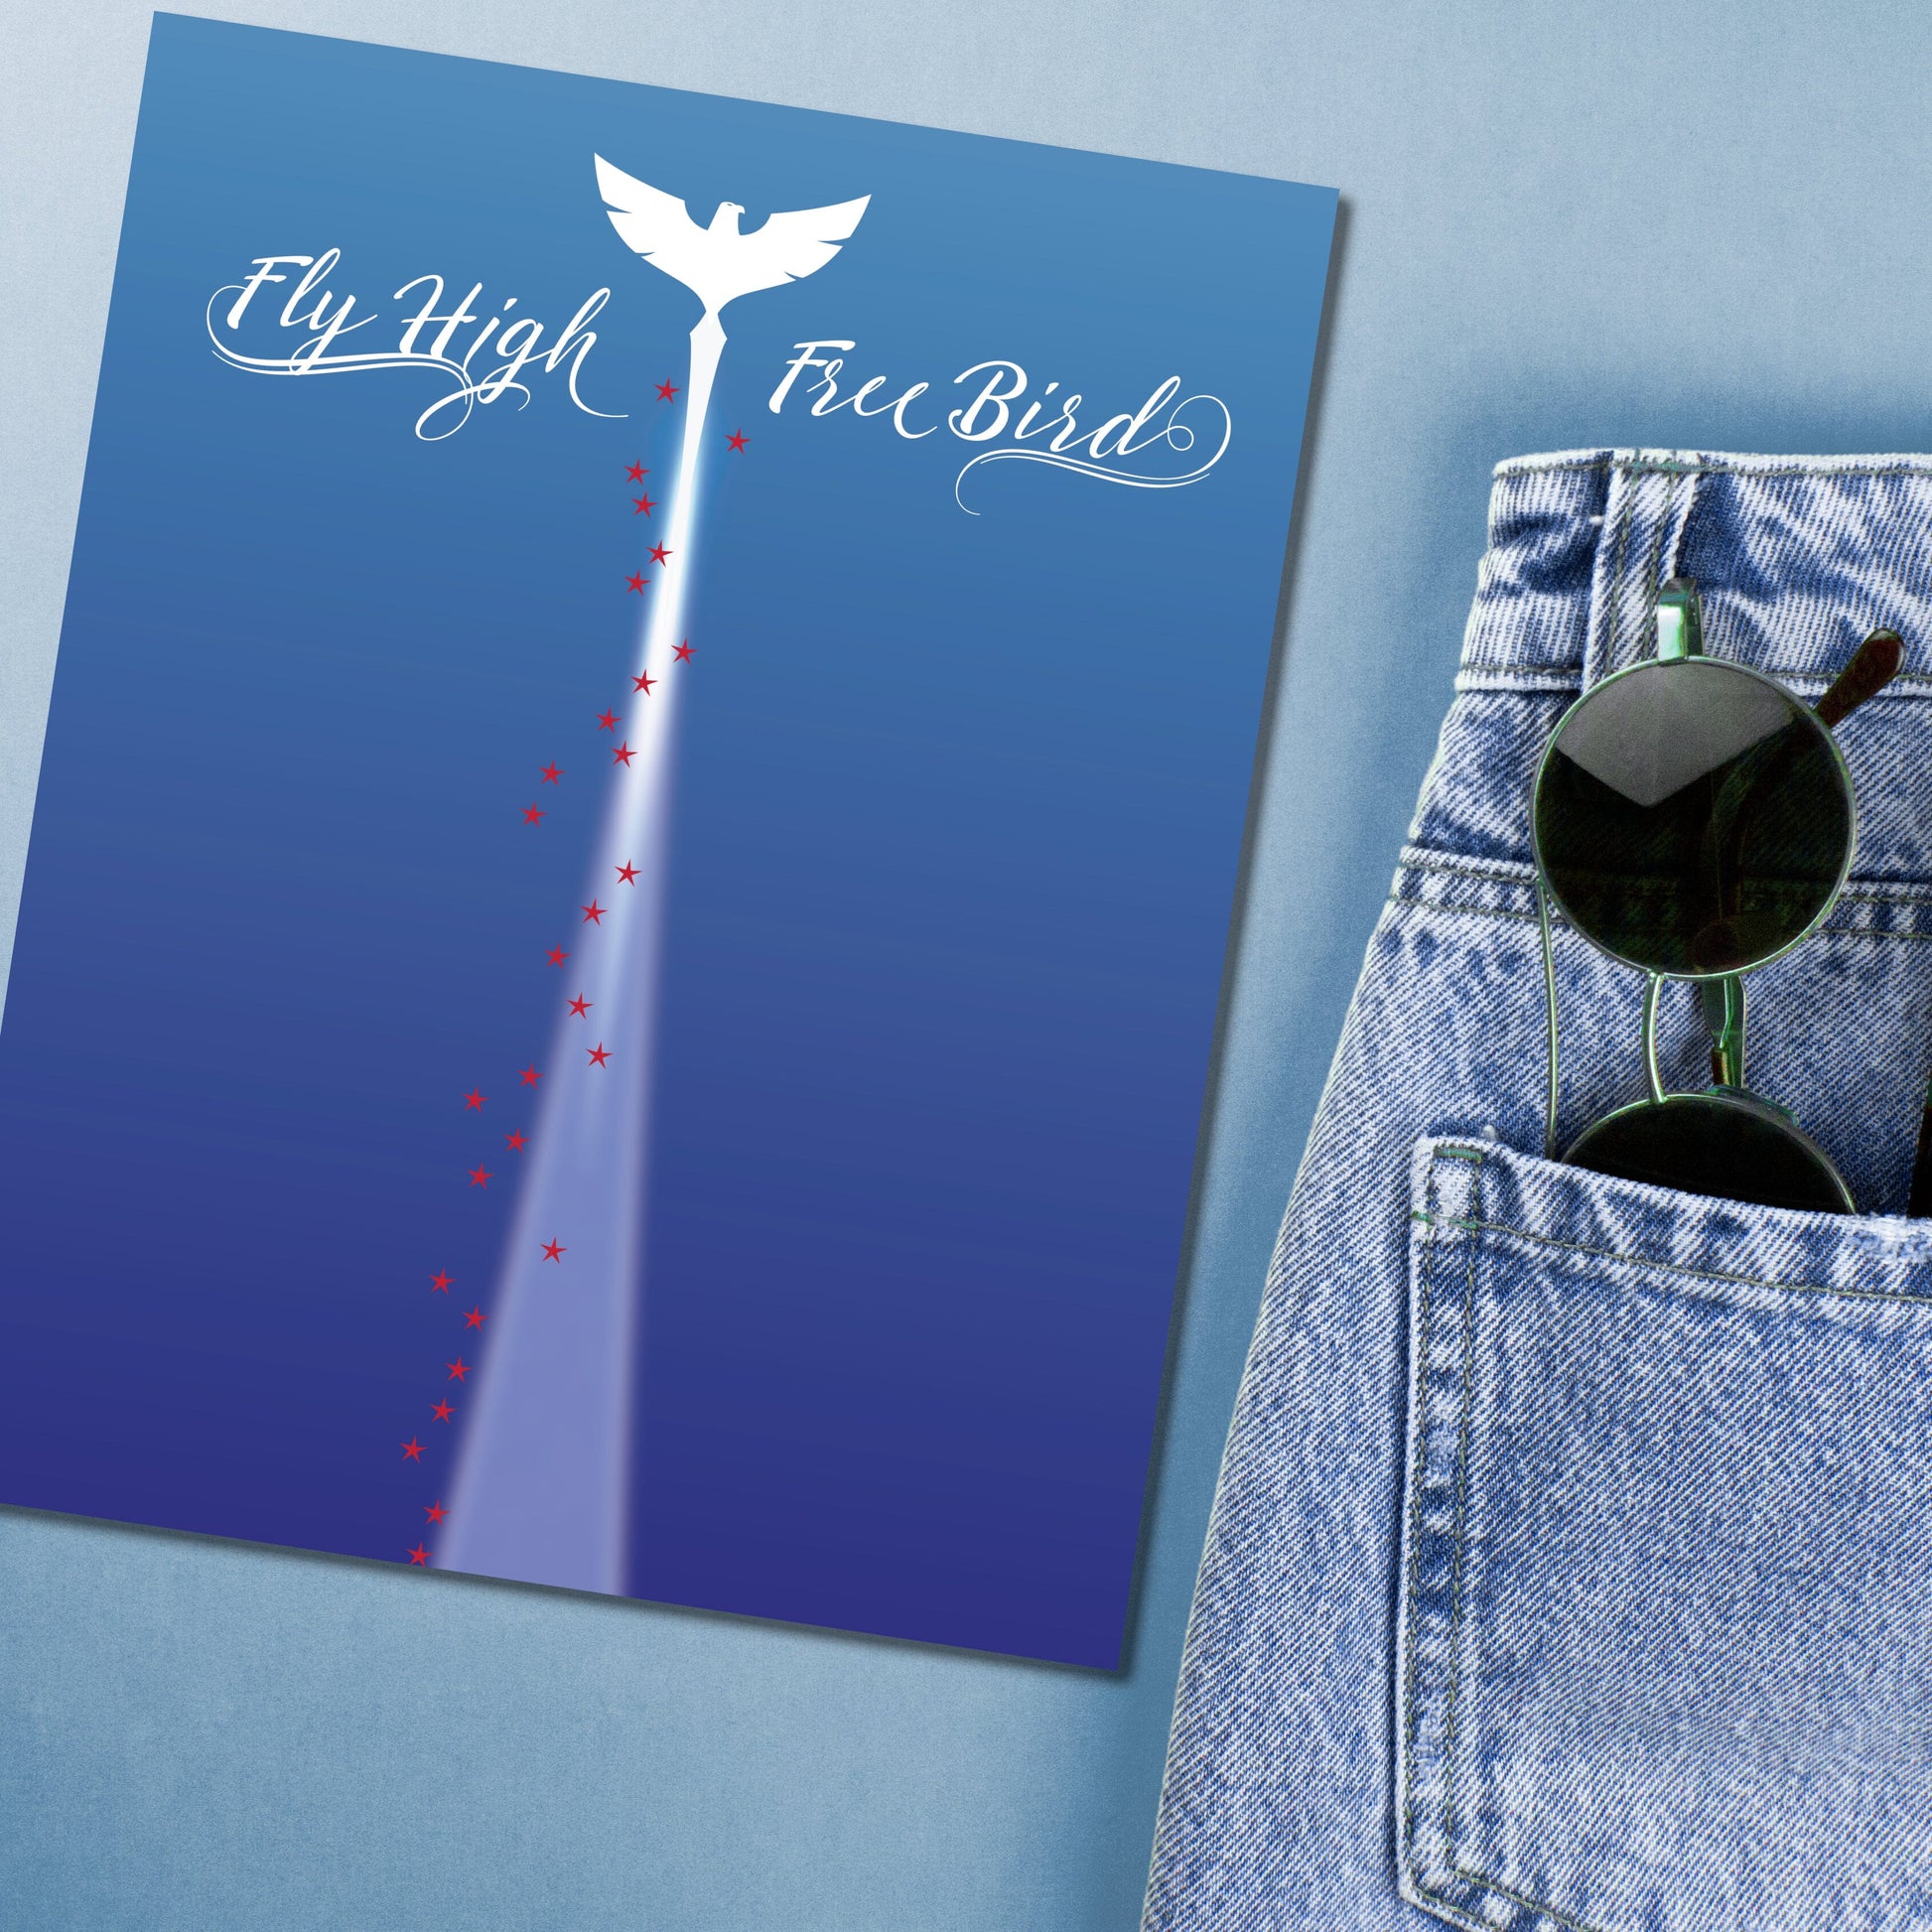 Free Bird by Lynyrd Skynyrd - Rock Music Song Lyric Artwork Song Lyrics Art Song Lyrics Art 8x10 Unframed Print 